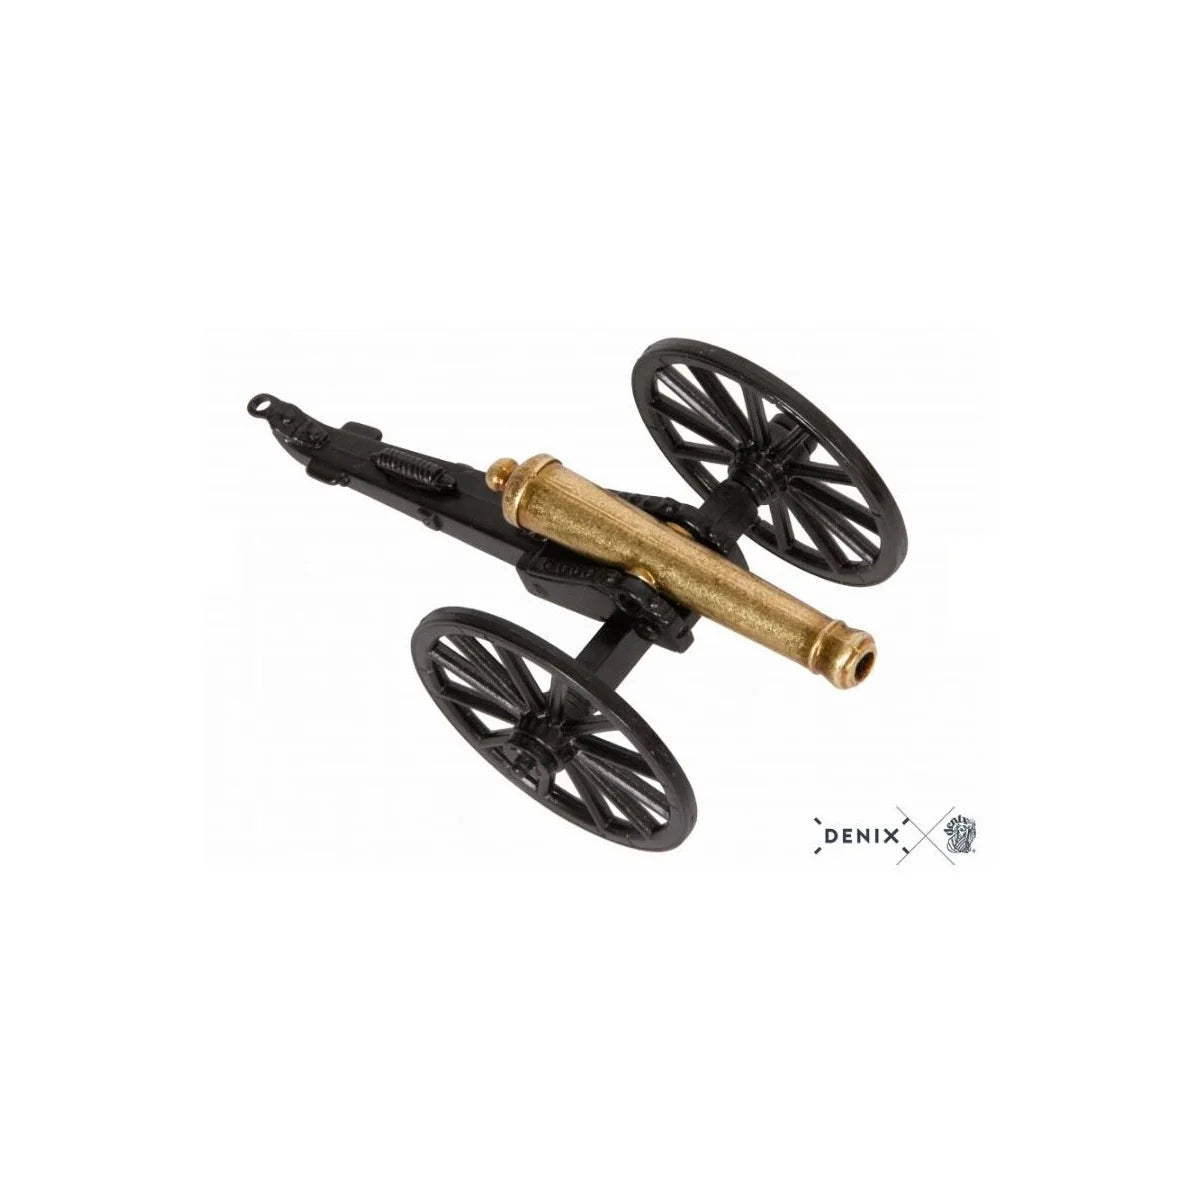 Replica Gun (07446) - USA 1857 Civil War Cannon